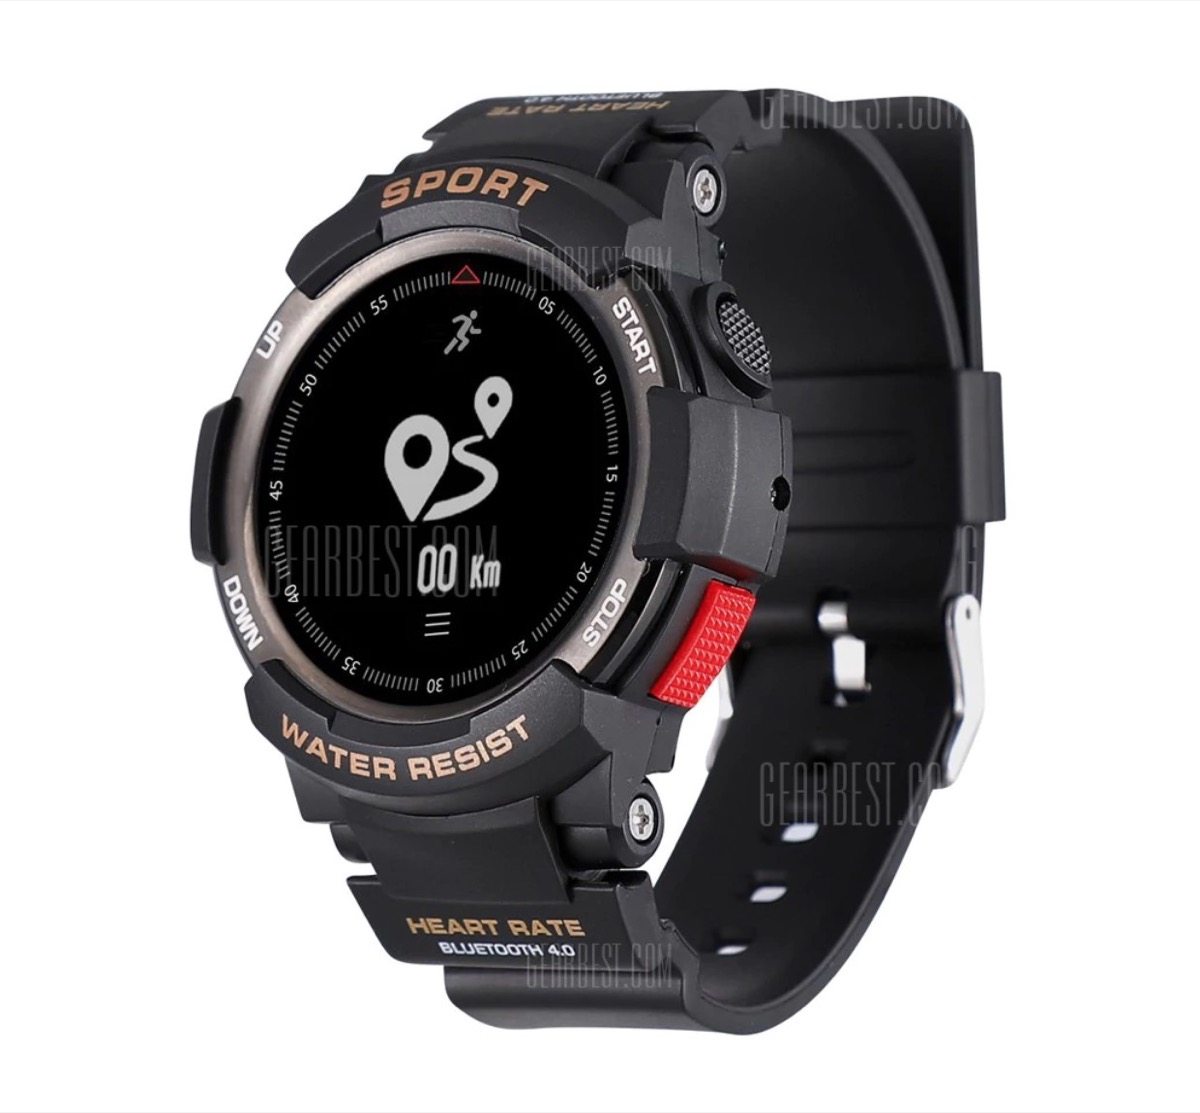 Smartwatch con GPS e 2 mesi di autonomia in offerta lampo a 23,32